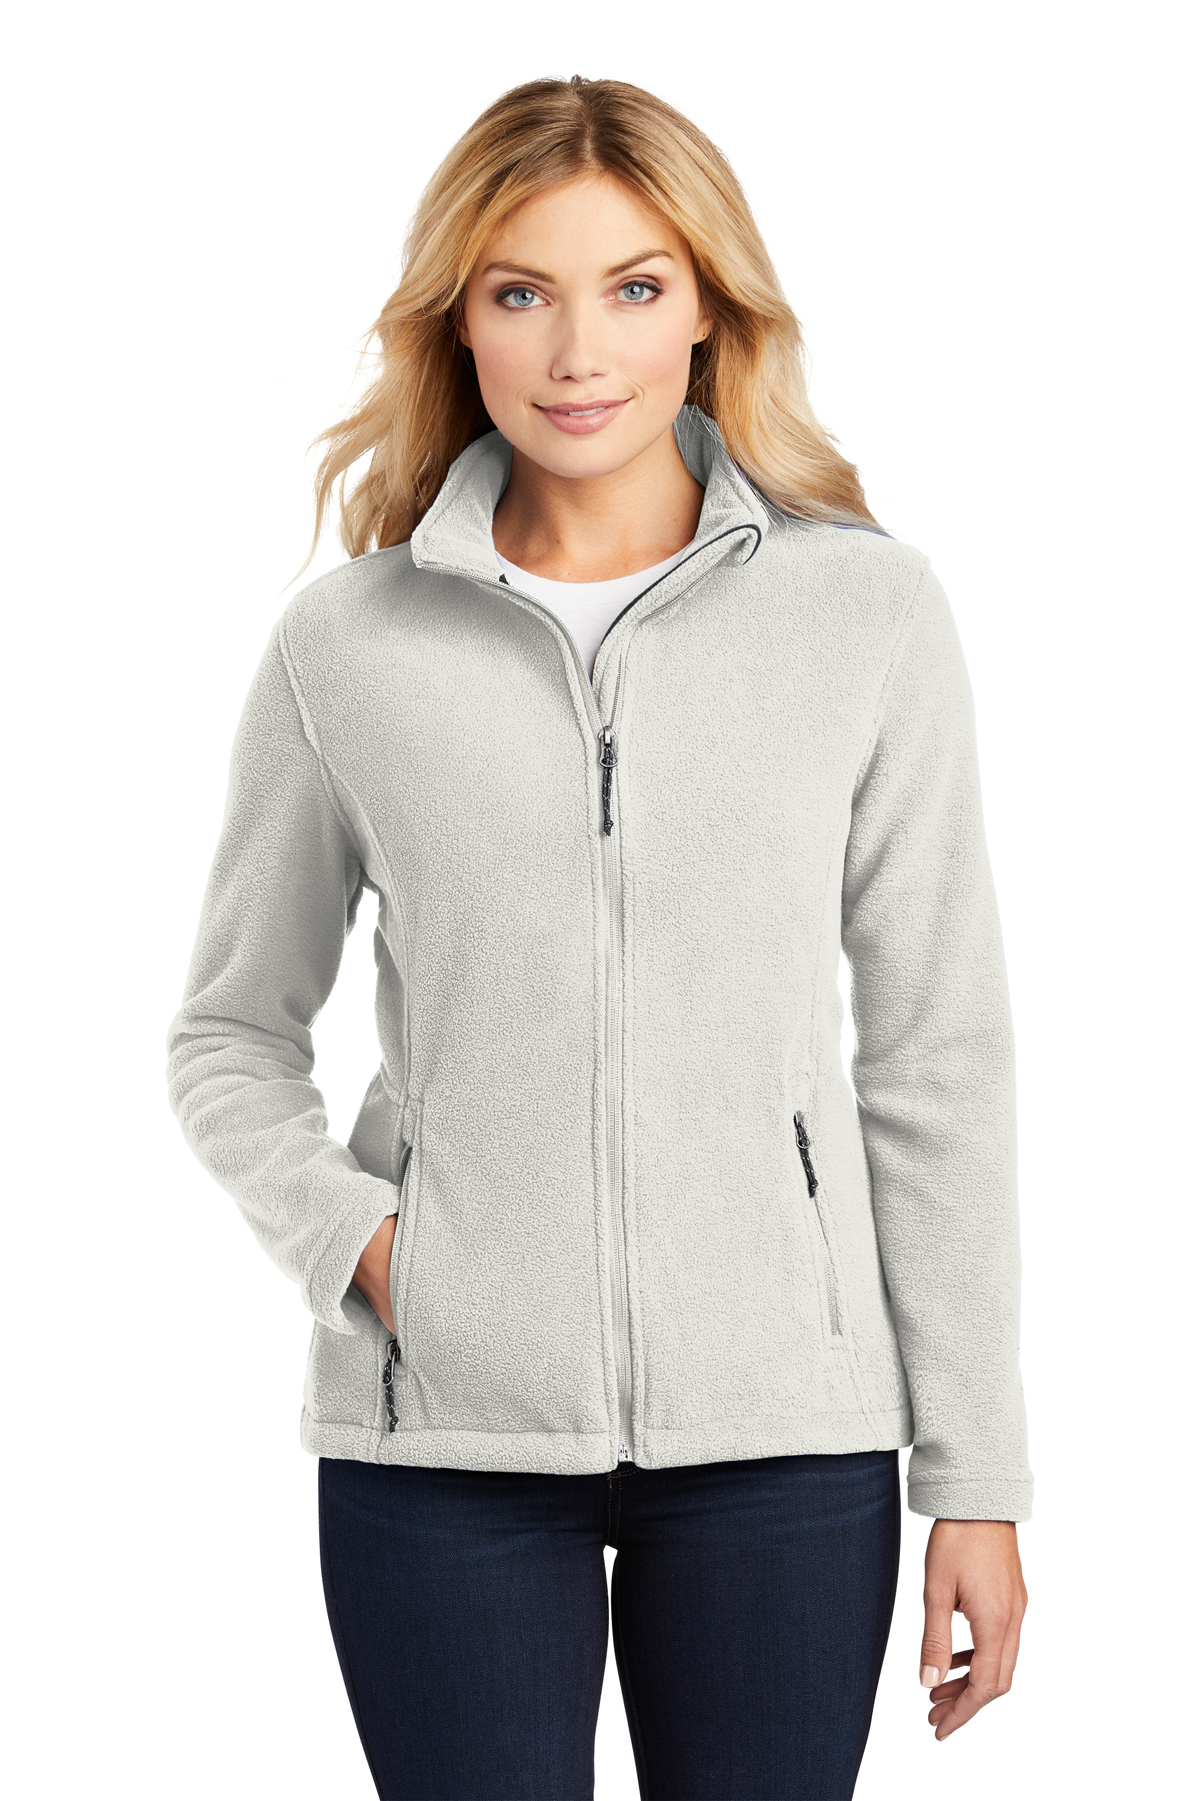 Ladies’ Full-Zip Fleece Jacket Port Authority® L217 | Central Uniforms